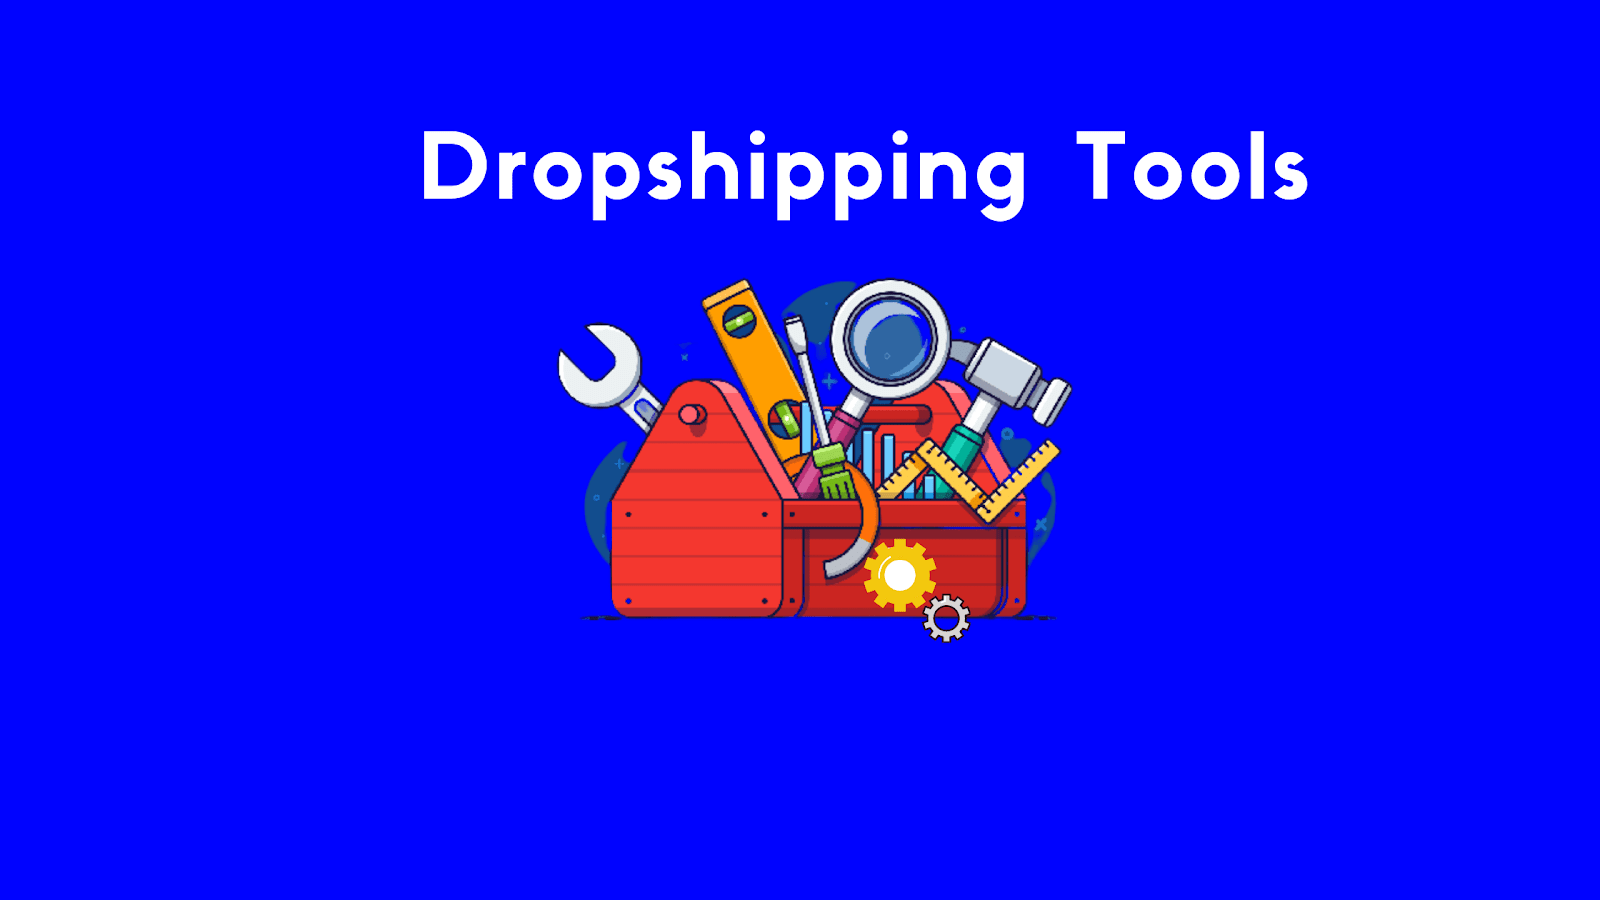 Dropshipping tools